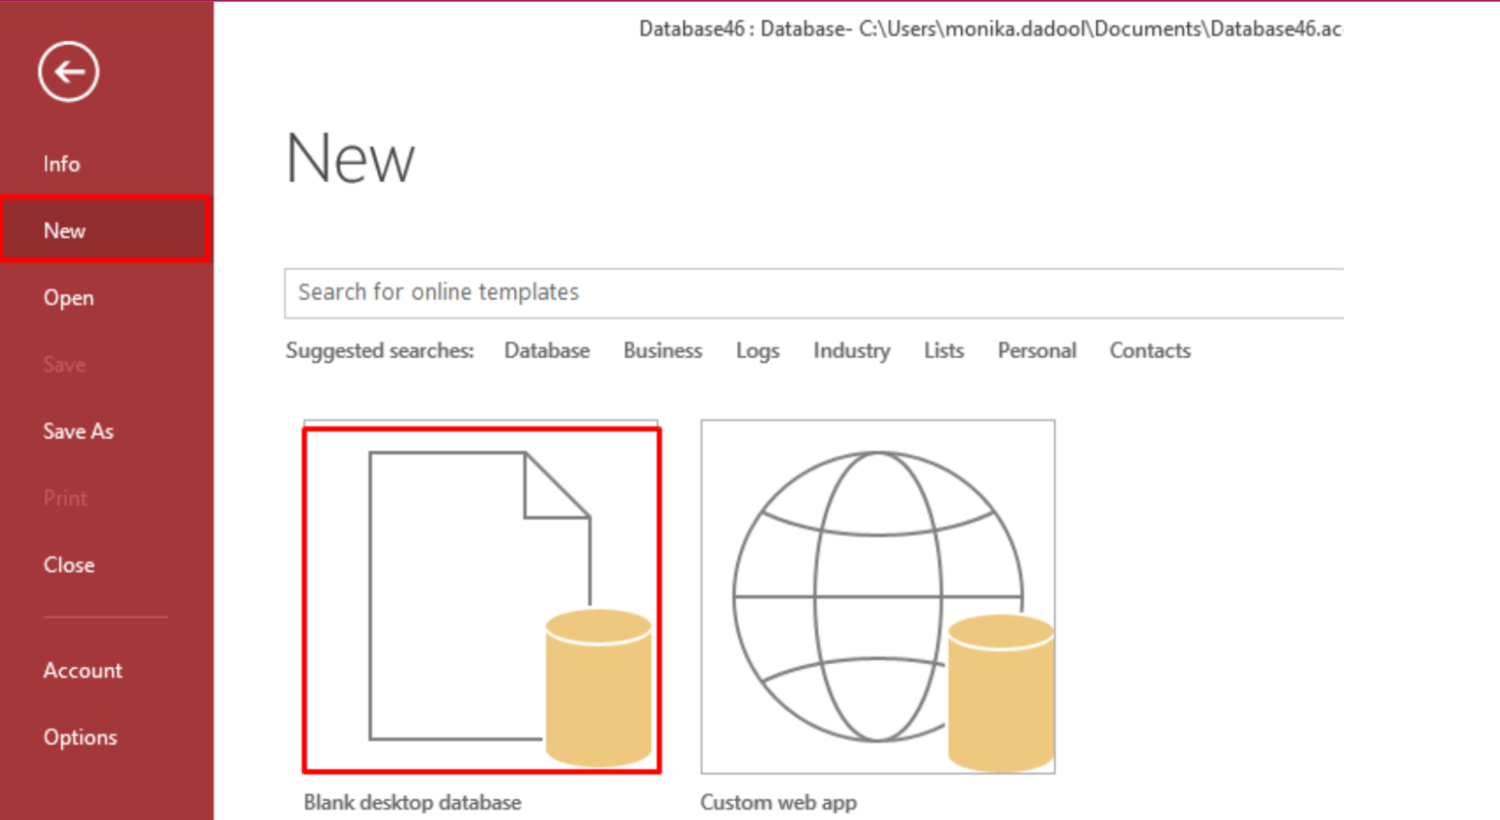 Blank Desktop database